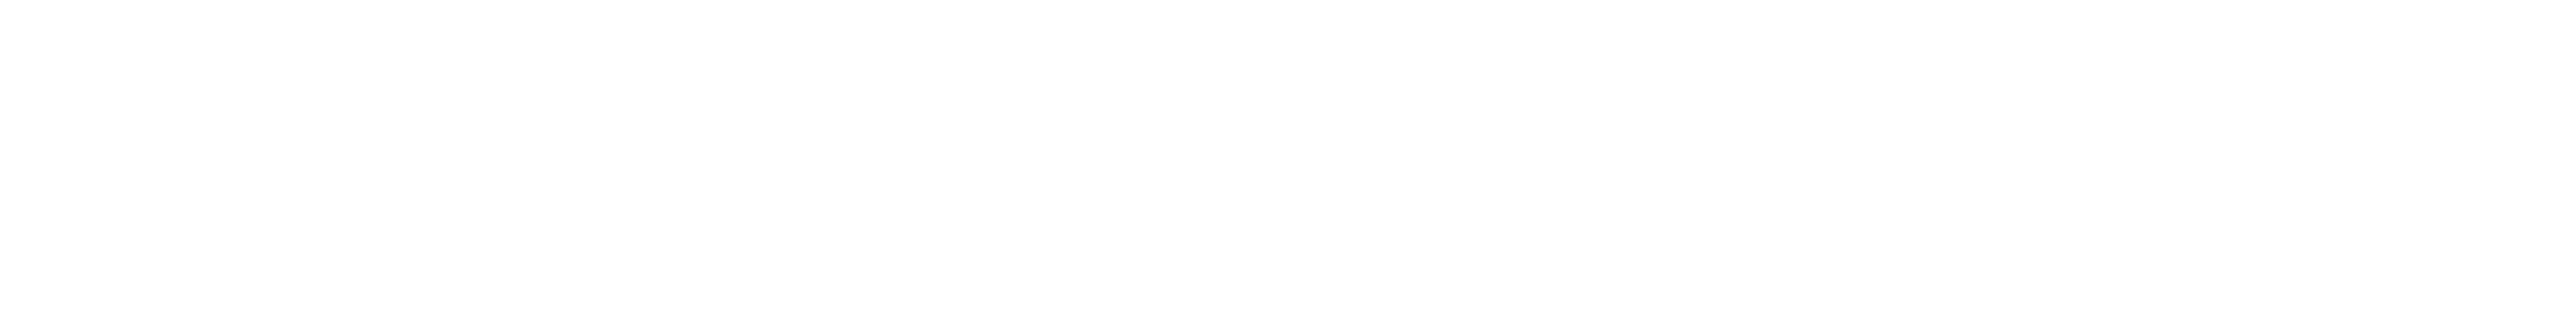 fg-k-logo-2017-wregistermark-1632324622 (1)